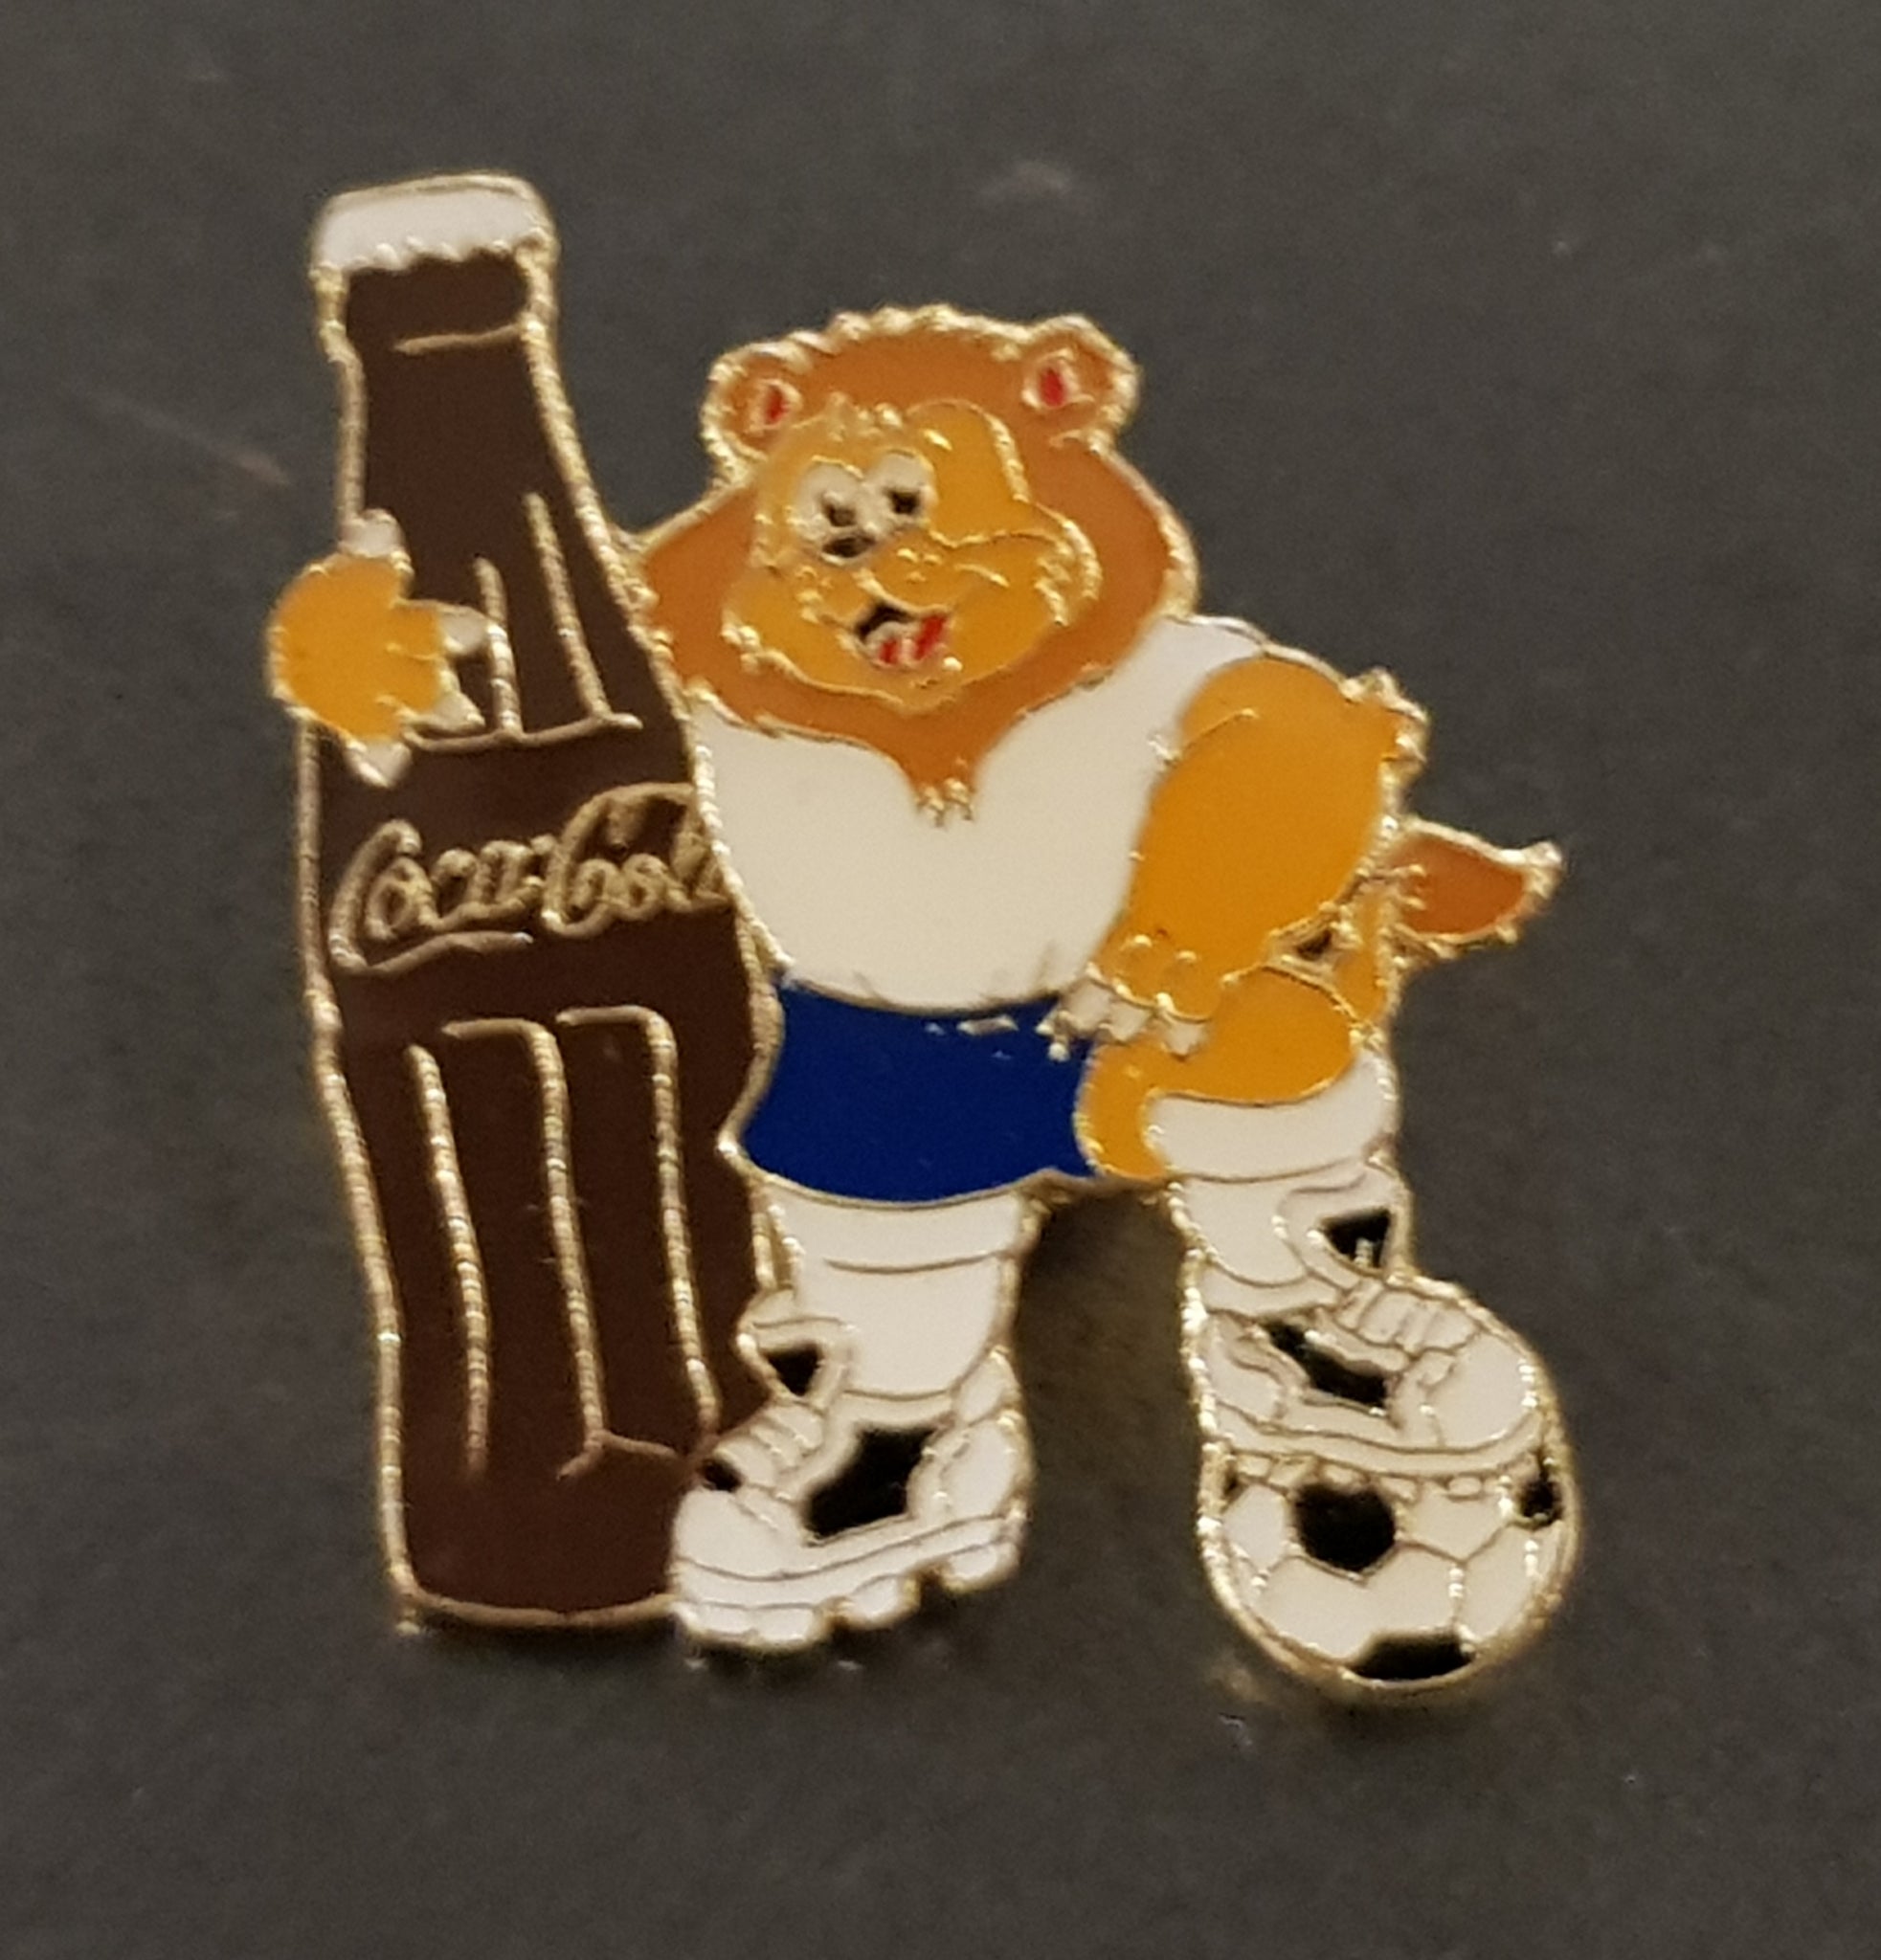 UEFA Euro 1996 Goaliath Mascot - Enamel Pin Design